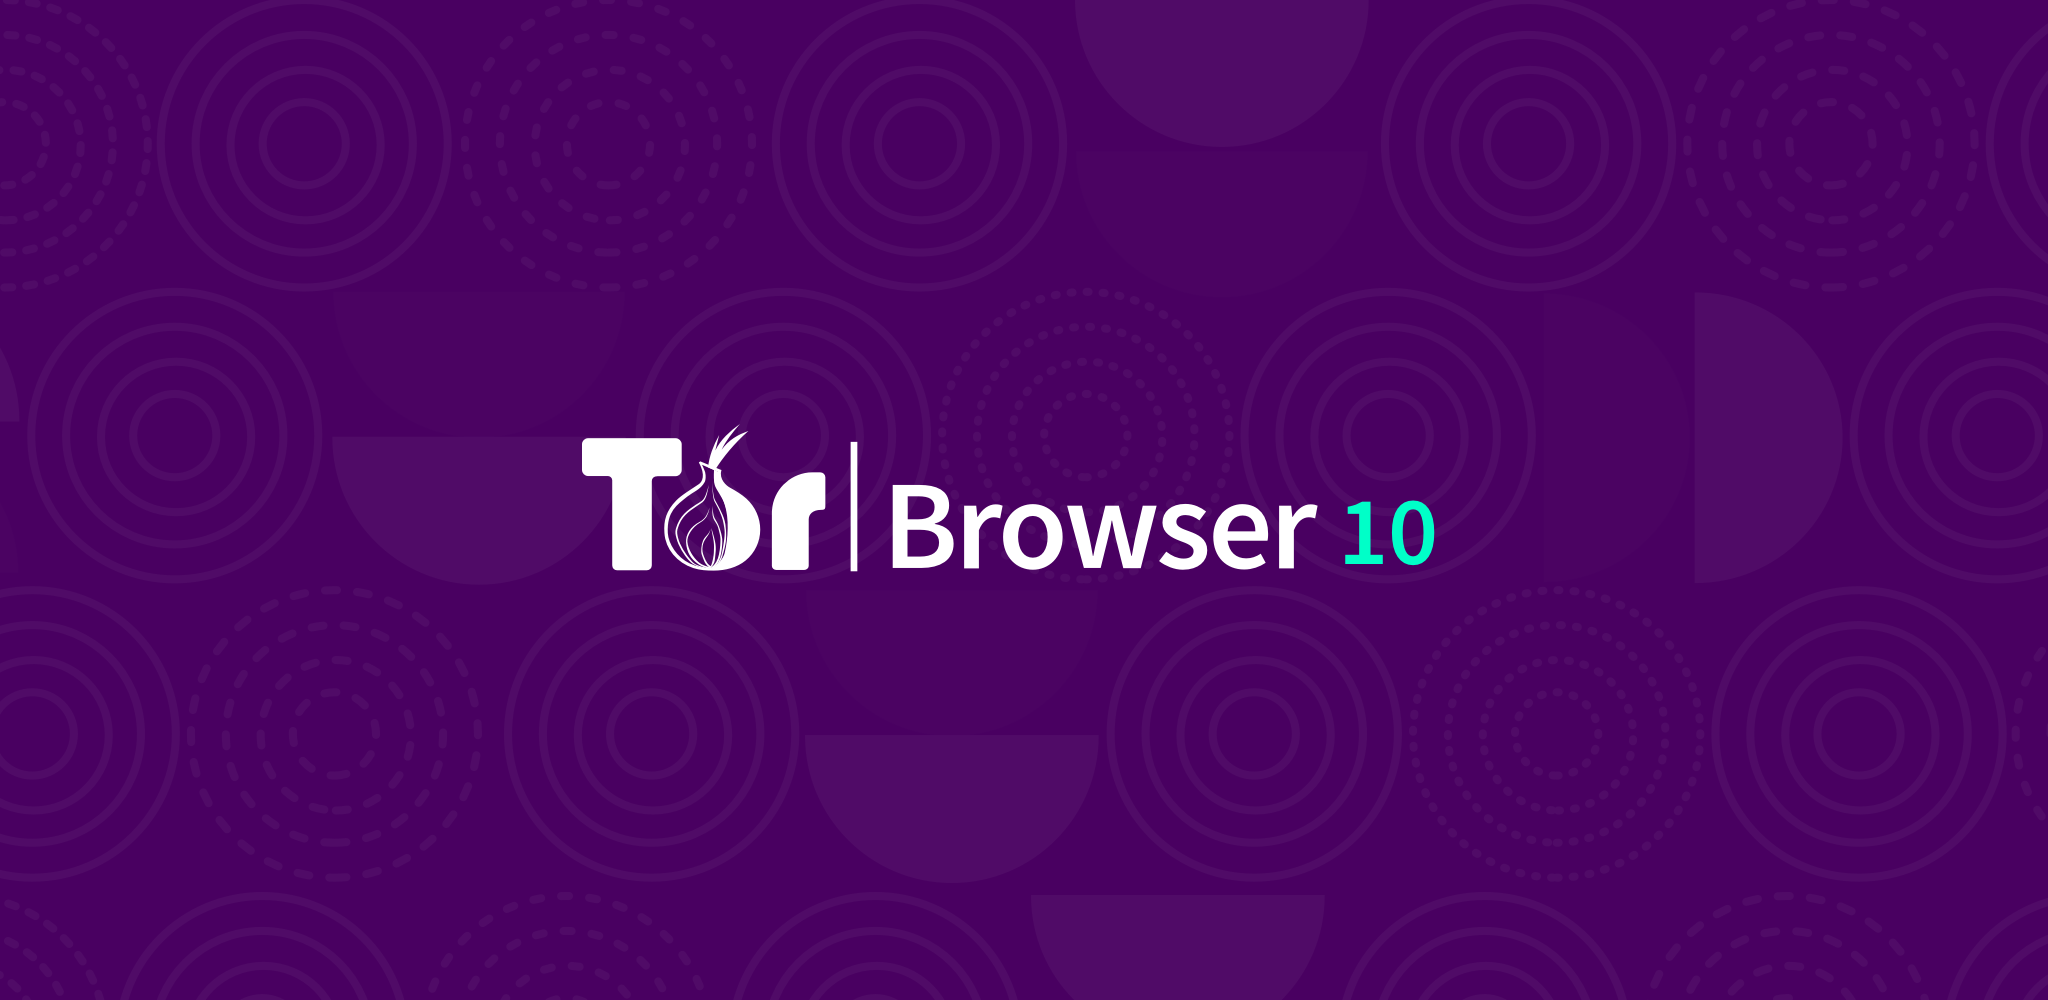 Tor browser 5 hydraruzxpnew4af tor browser виды hydraruzxpnew4af